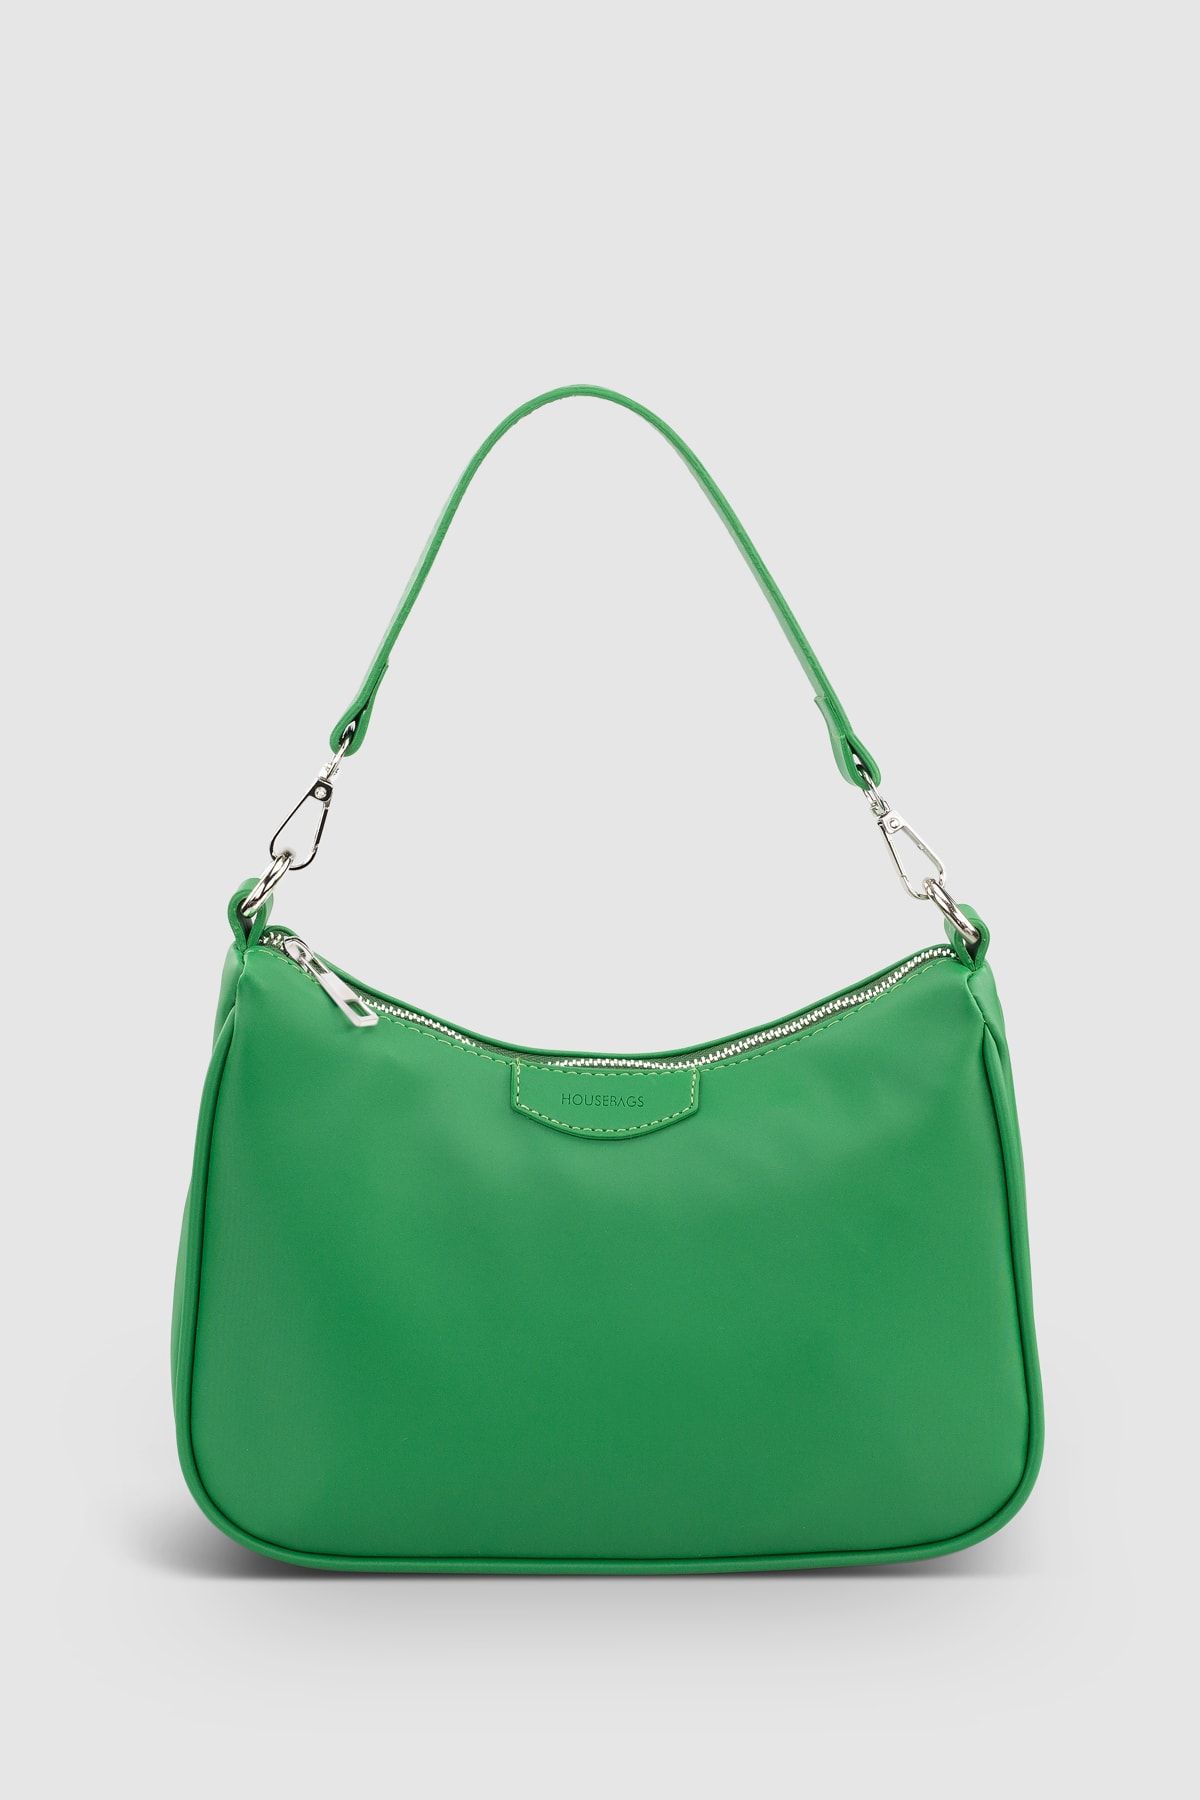 Housebags Kadın Yeşil Baguette Çanta 206